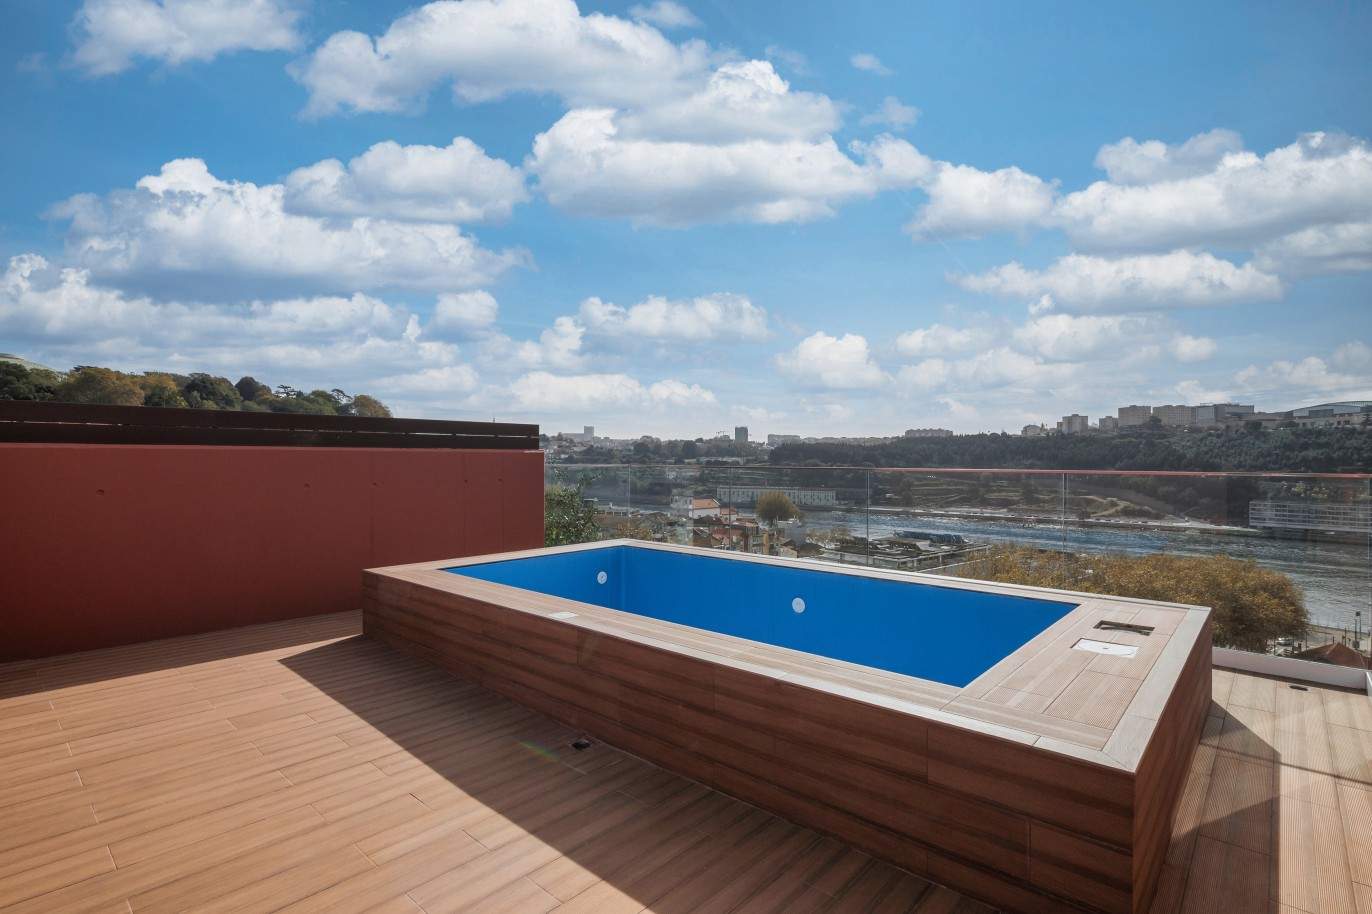 Penthouse nueva de 2 dormitorios con piscina y vistas al río, Oporto, Portugal_211766